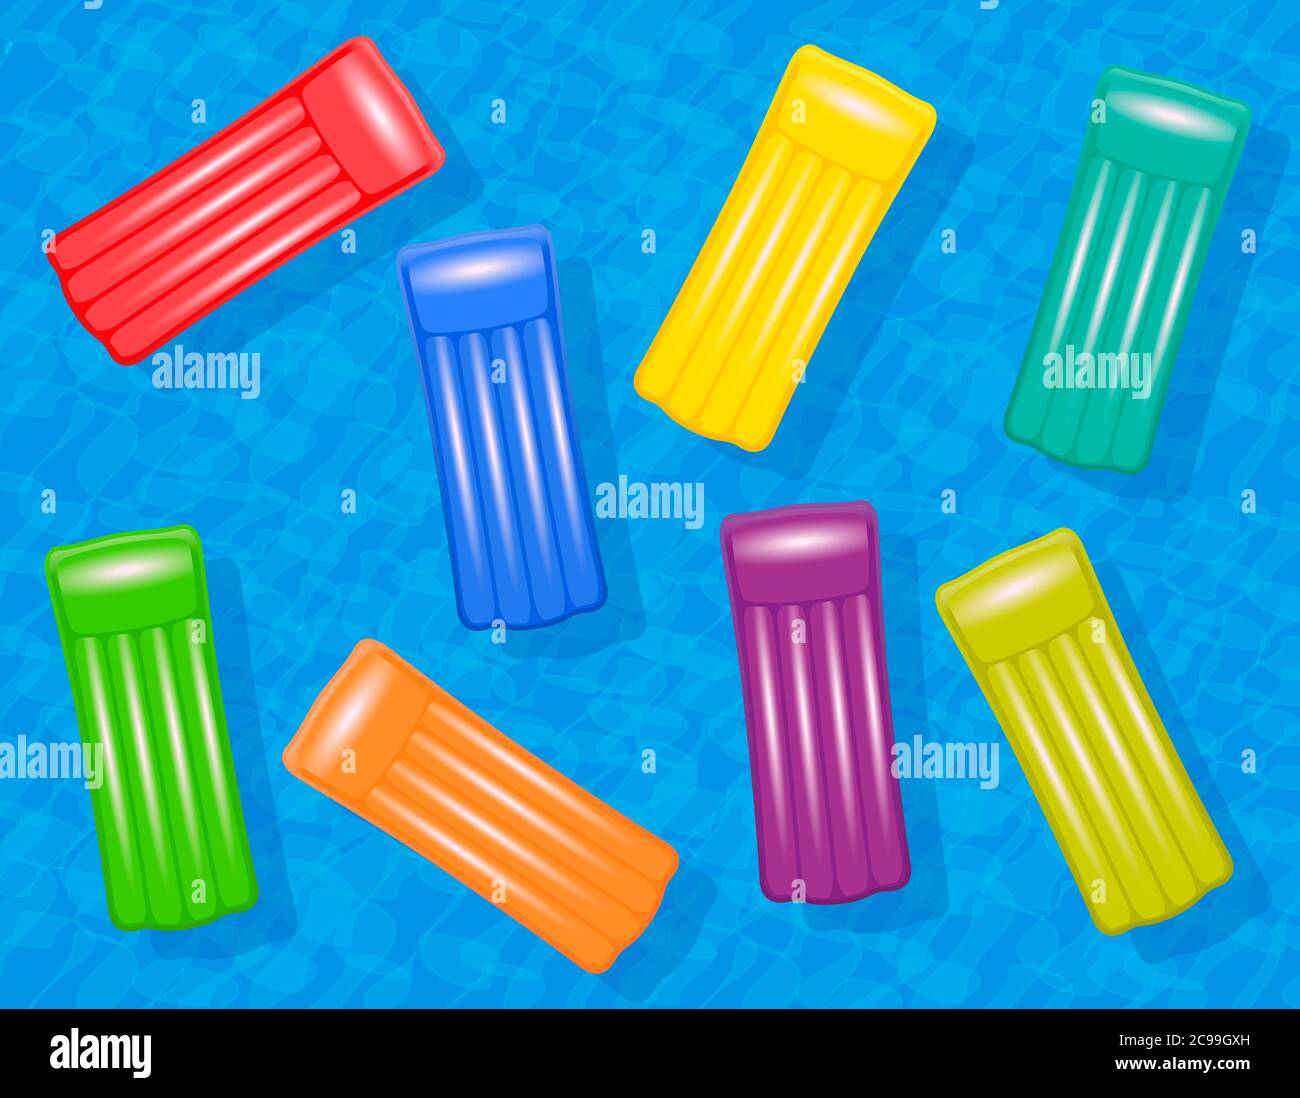 Aufblasbare bunte Luftmatratzen schwimmen in einem blauen Wasserbecken. Symbol für Sommerspaß, Gruppenreisen oder junge und freundliche Urlaubsziele. Stockfoto